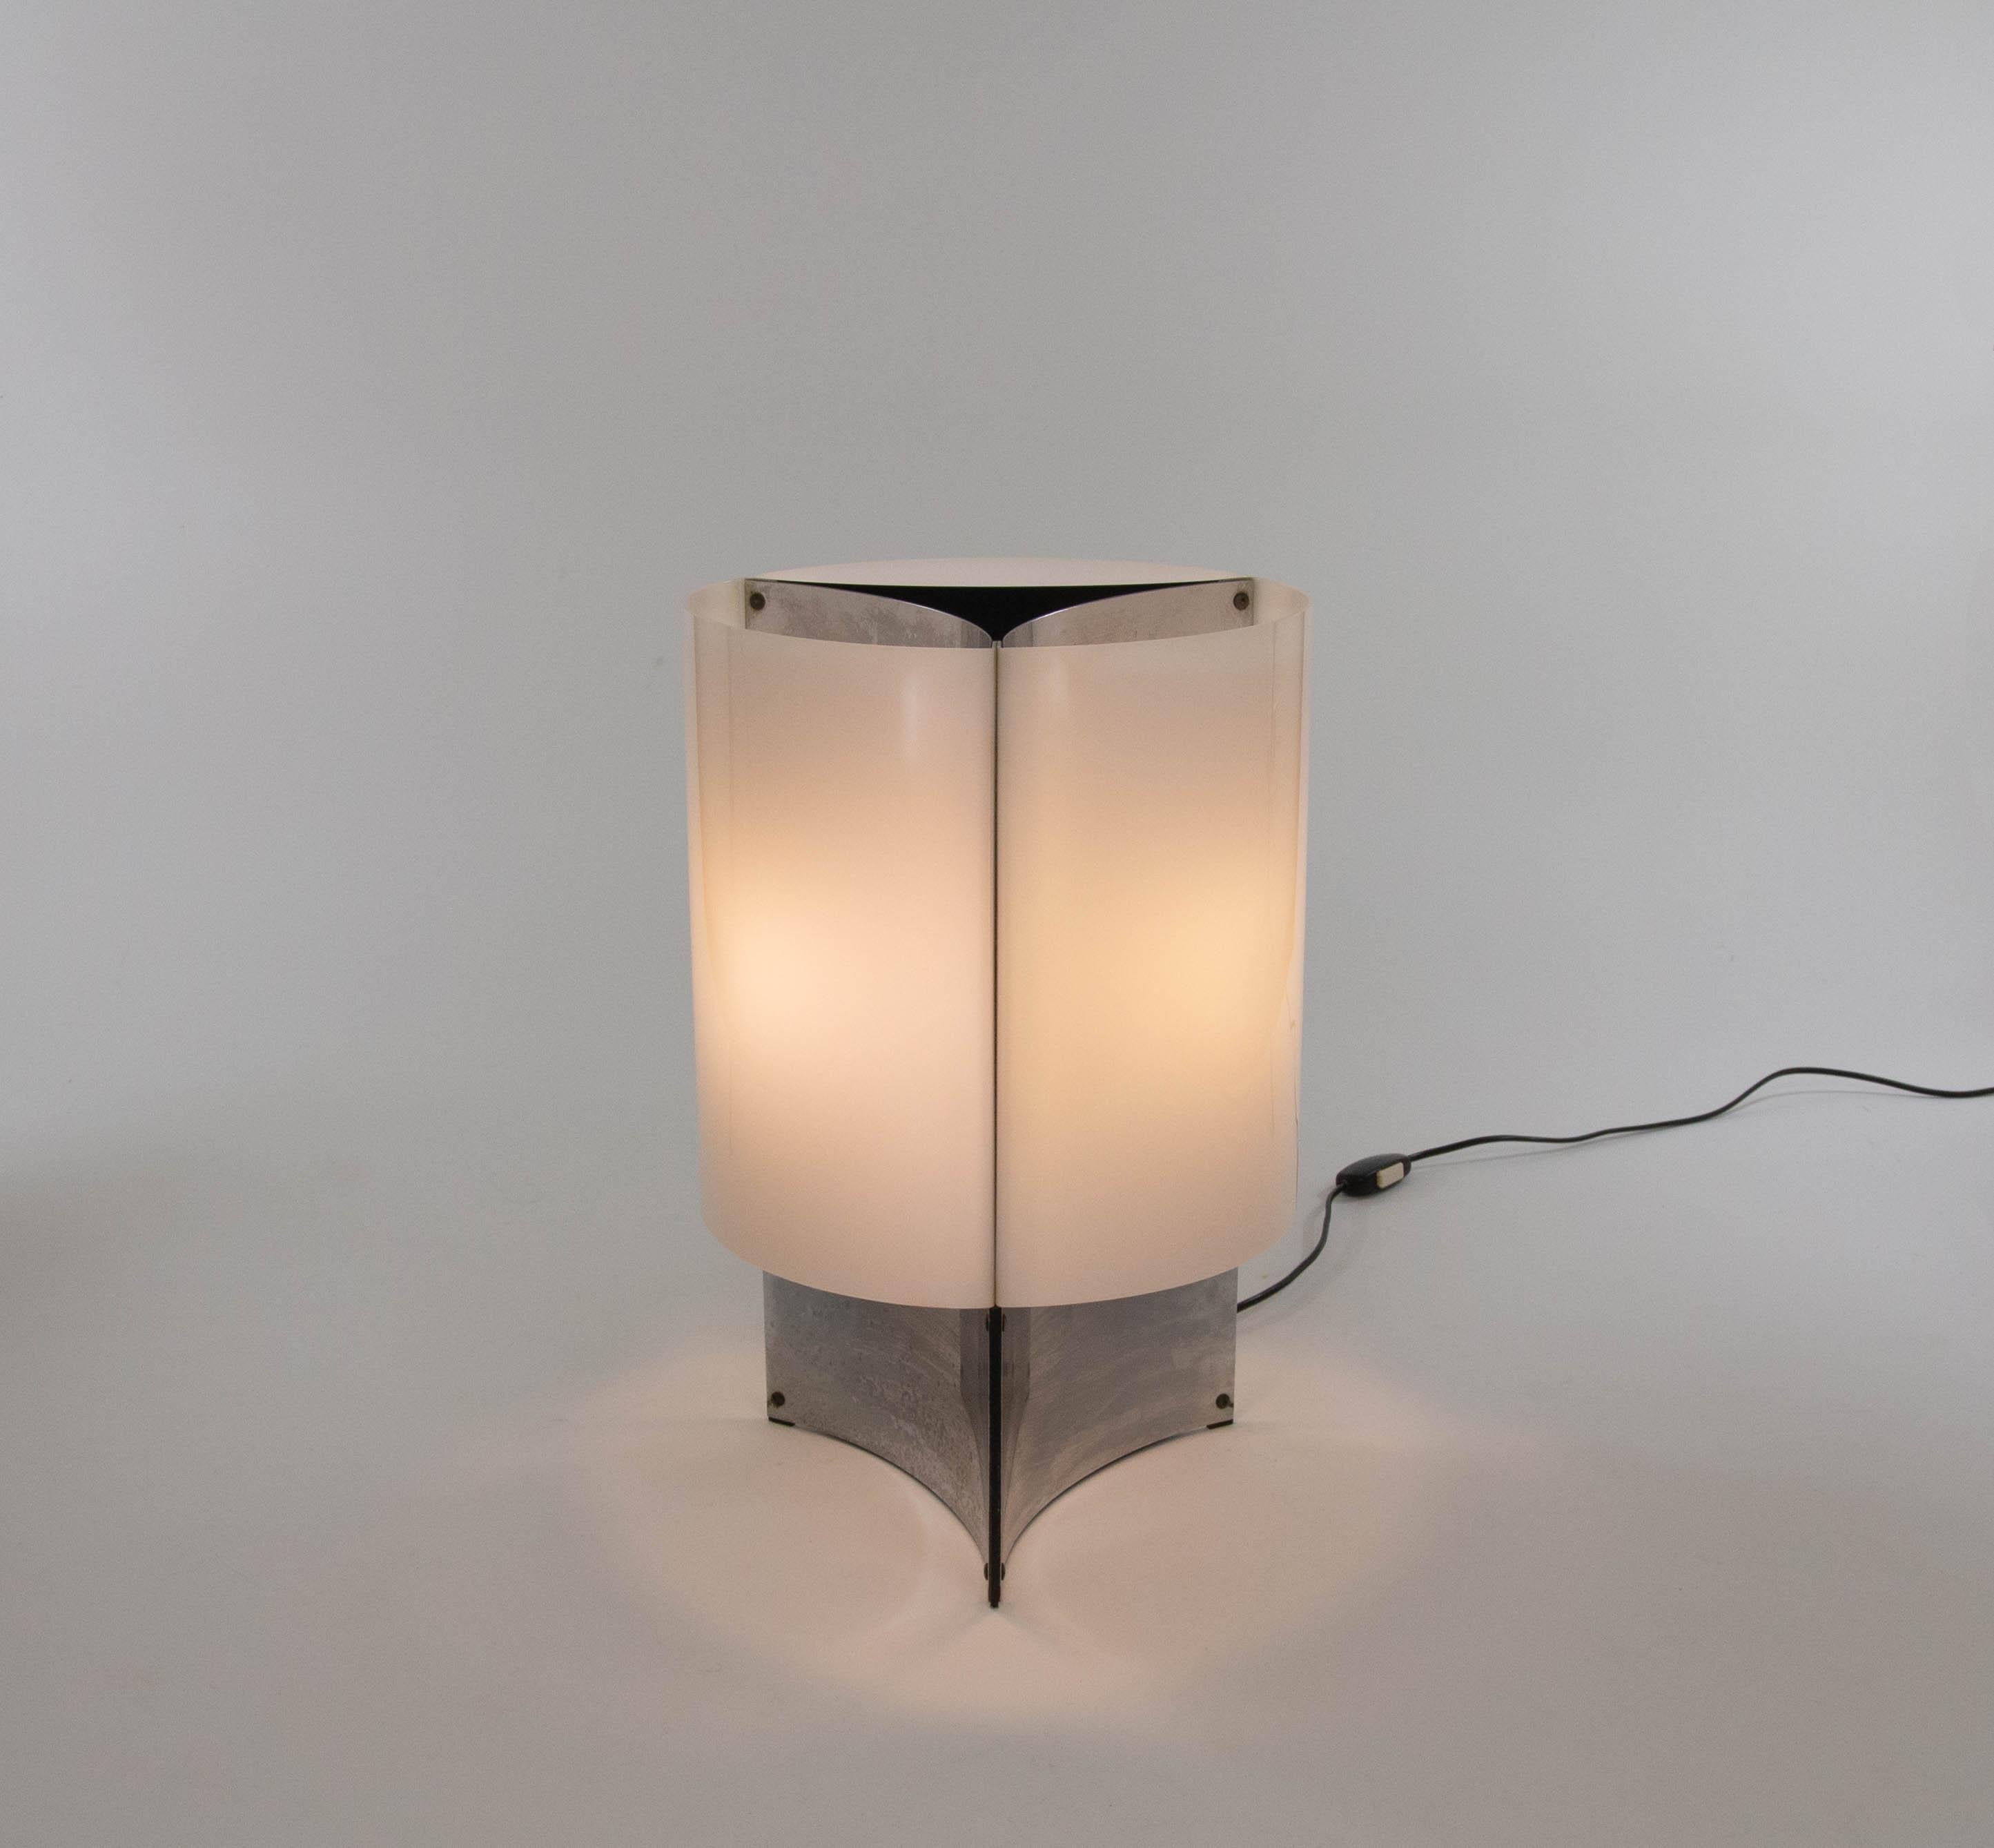 Diese elegante Leuchte, Modell 526, wurde 1965 von Massimo Vignelli für den italienischen Leuchtenhersteller Arteluce entworfen.

Modell 526 ist eine Tischleuchte mit einem Sockel, der aus drei konkaven verchromten Platten besteht. Dieser Sockel ist